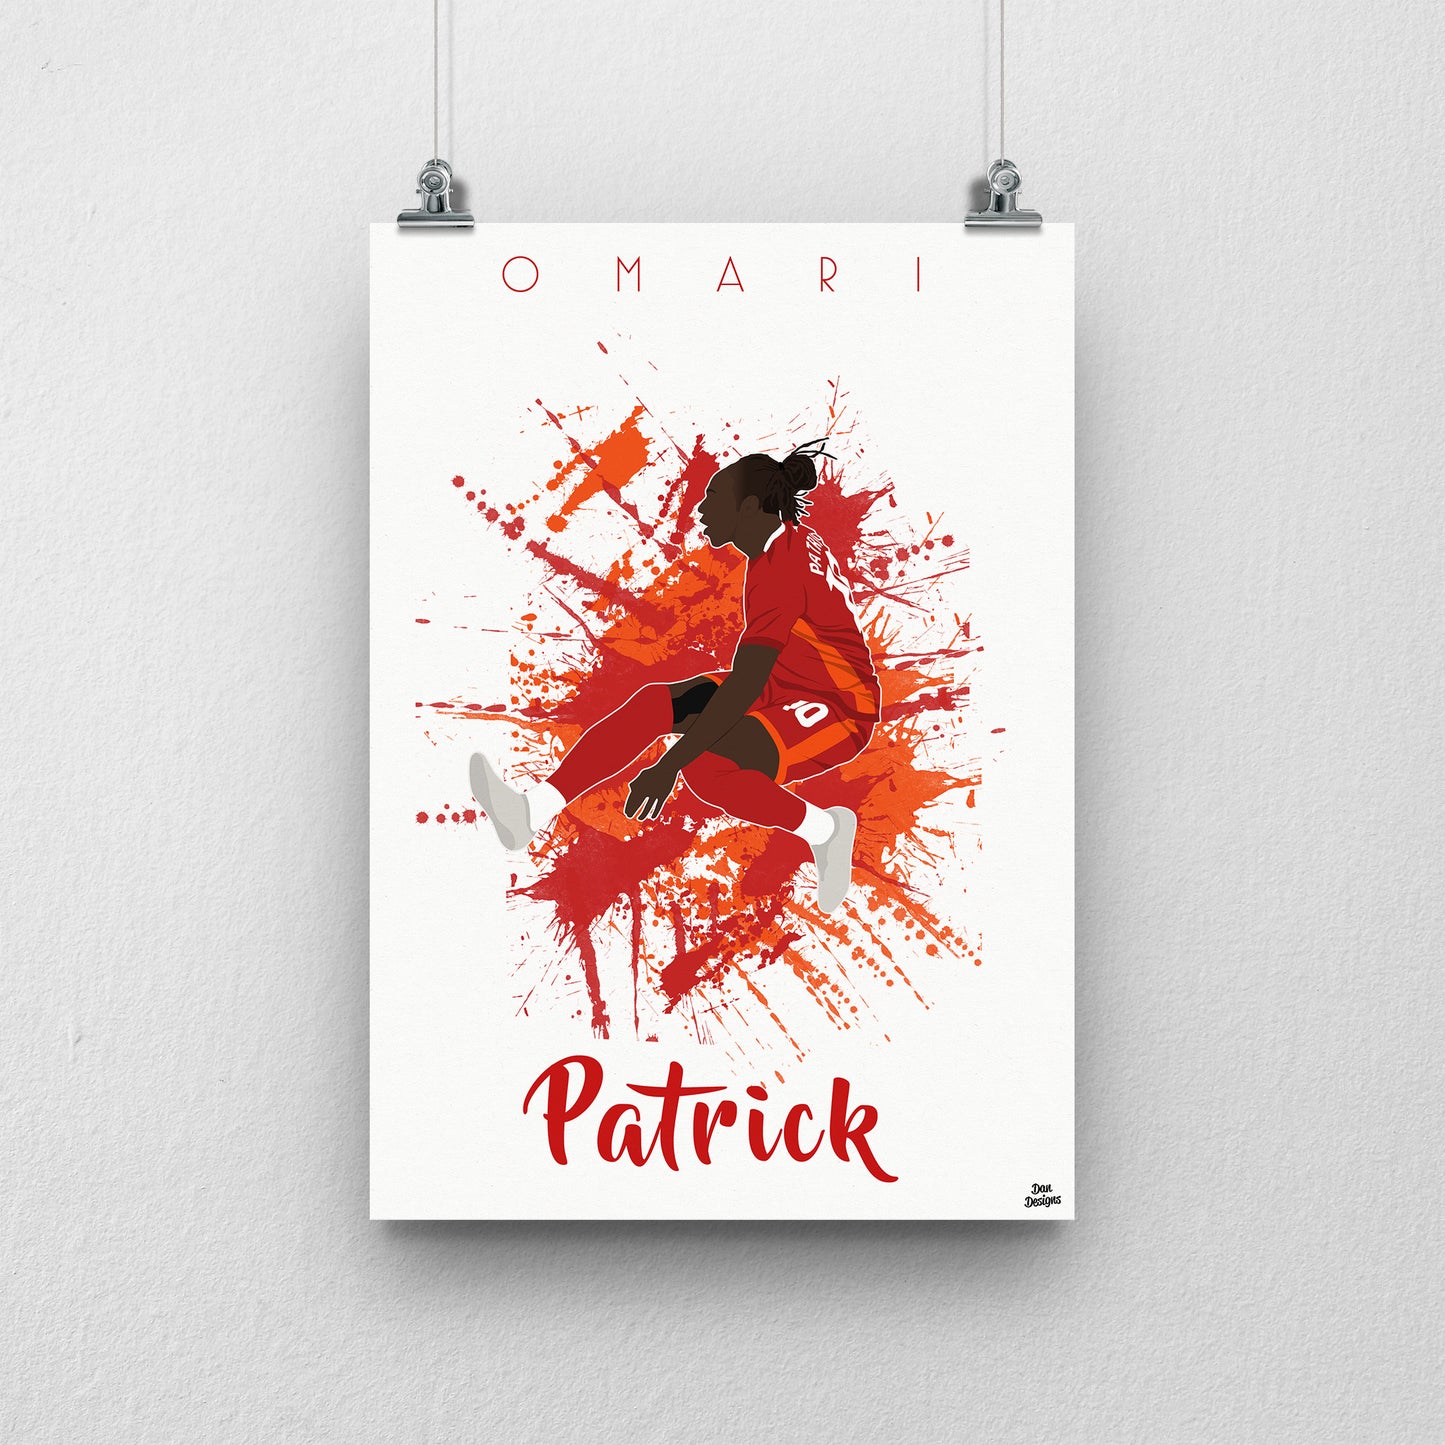 Omari Patrick Final Print